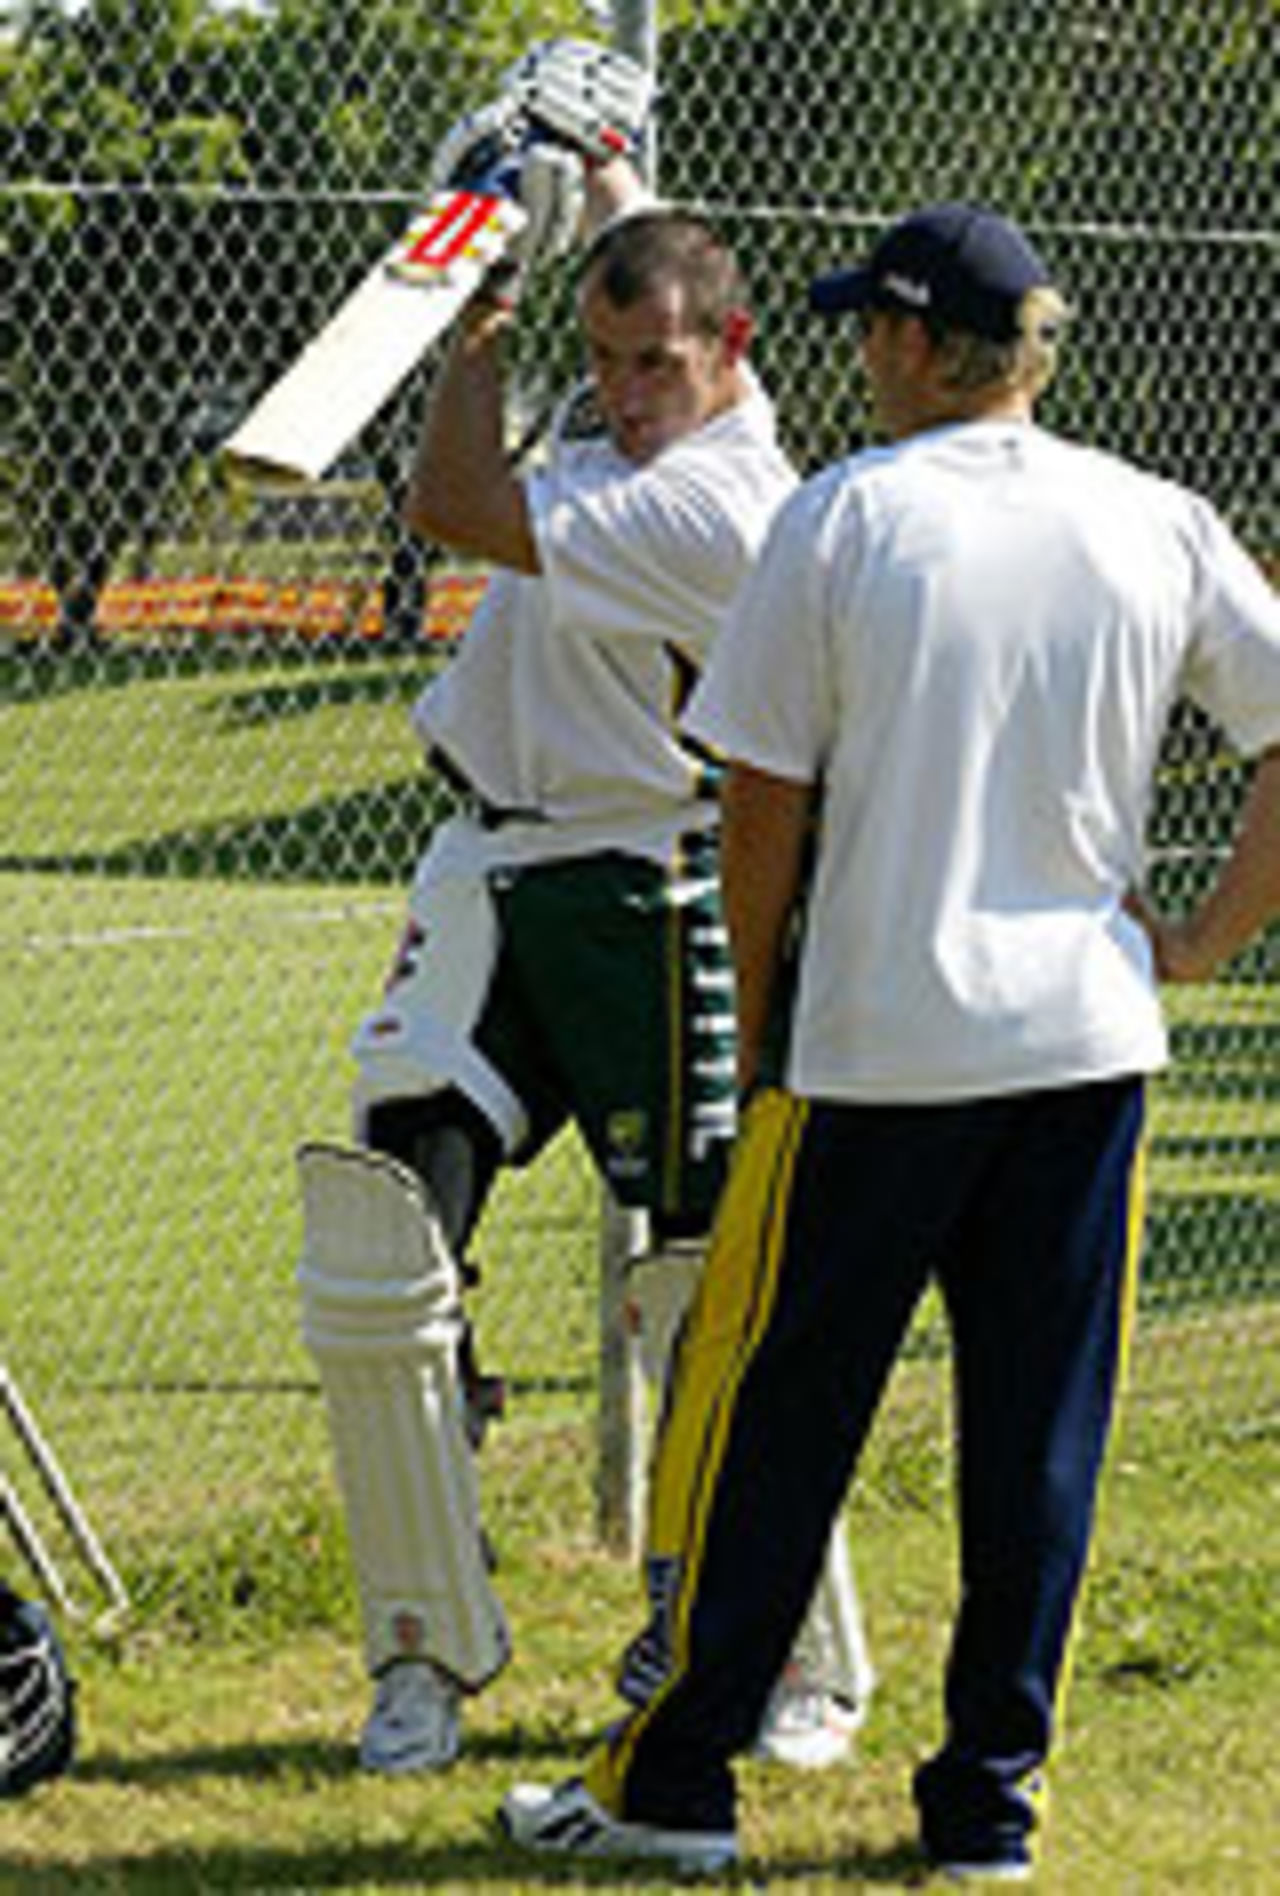 Matthew Elliott in the nets, Darwin, June 30, 2004